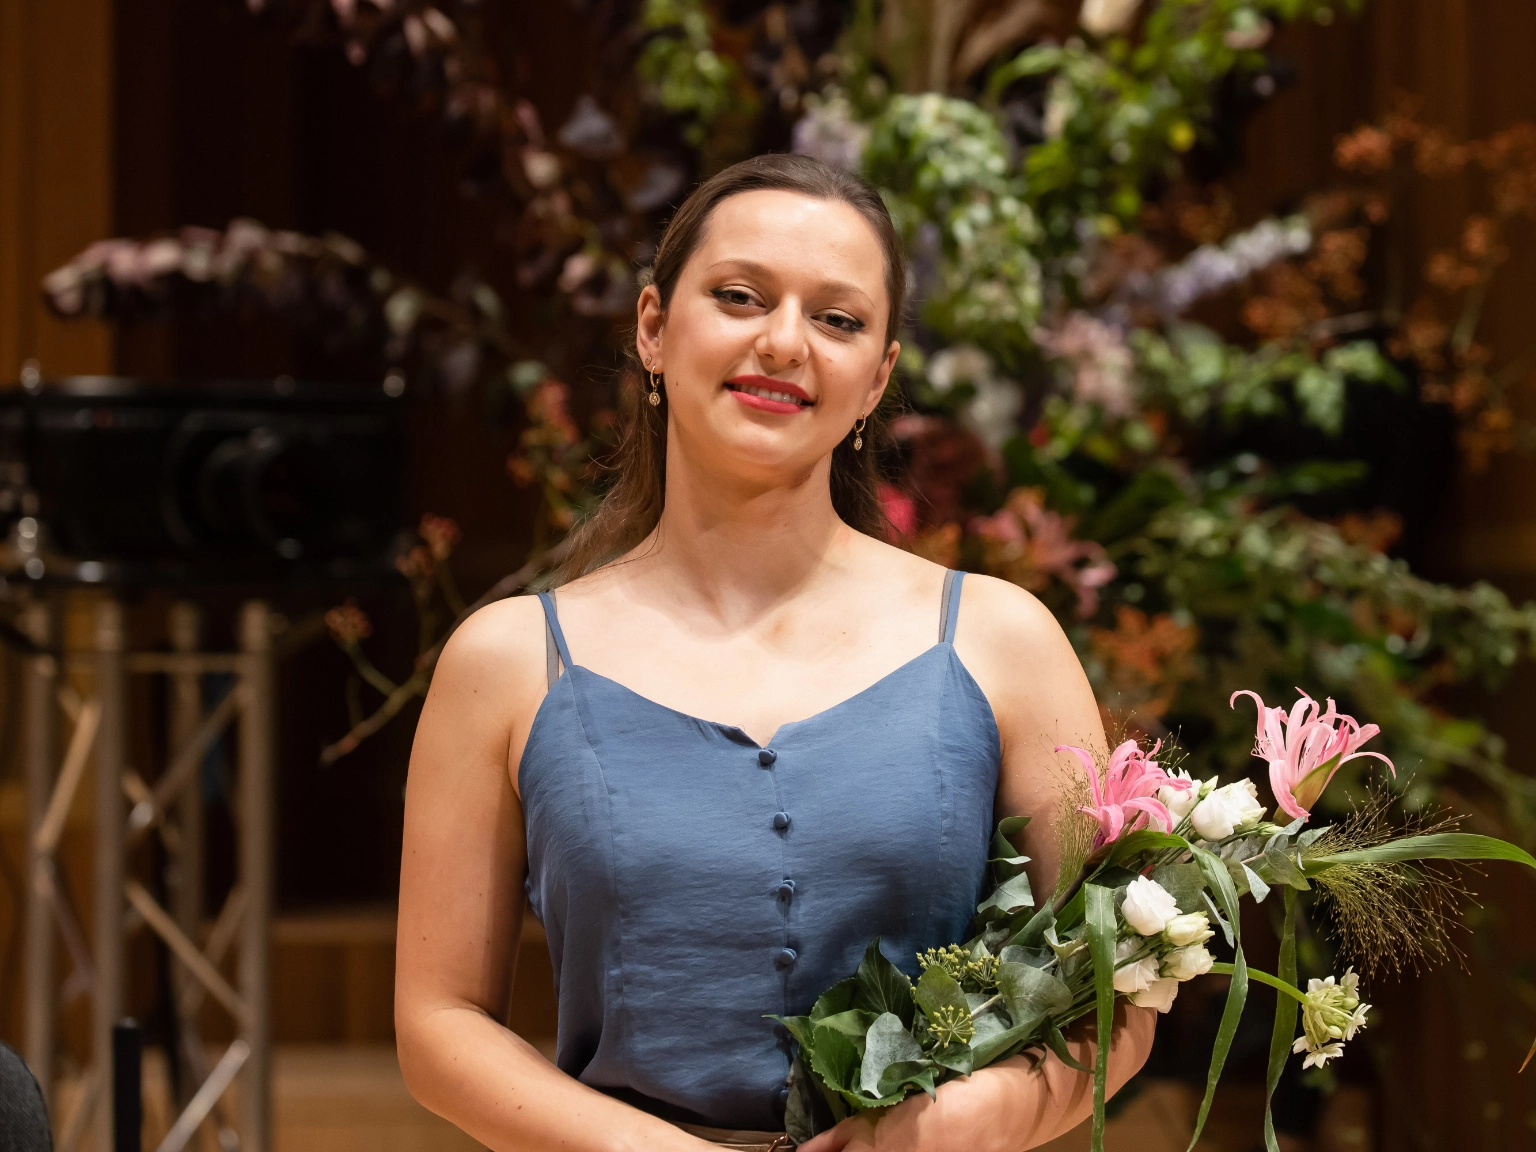 Die Preisträgerin des Joseph Joachim Wettbewerbs 2021, Maria Ioudenitch, bei der Preisverleihung. Sie hält Blumen im Arm und lächelt in die Kamera.